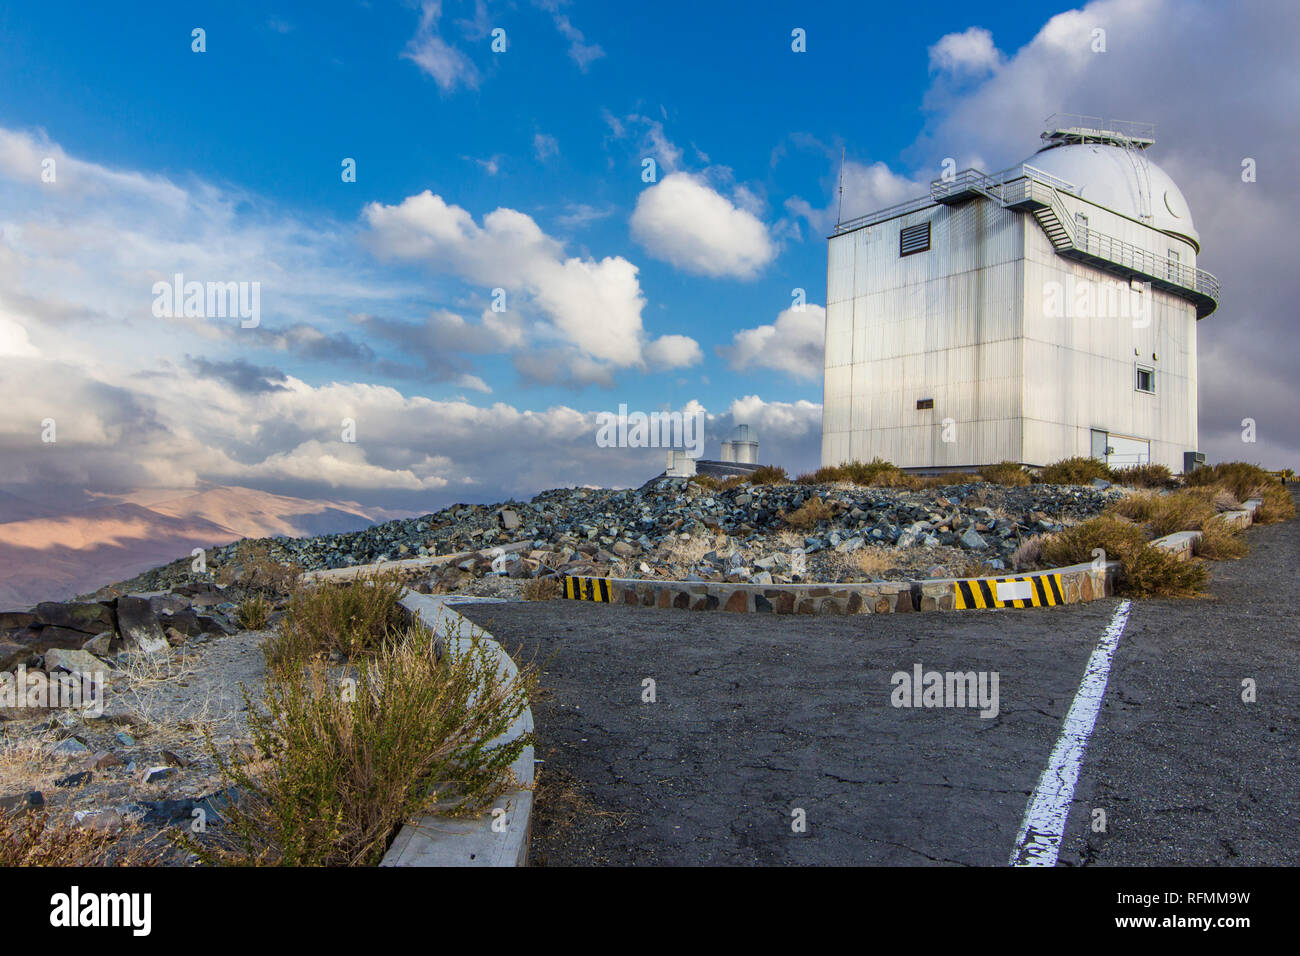 L'Observatoire européen austral de La Silla, Chili du Nord. L'un des premiers observatoires astronomiques pour voir les planètes dans d'autres étoiles. Désert d'Atacama Banque D'Images